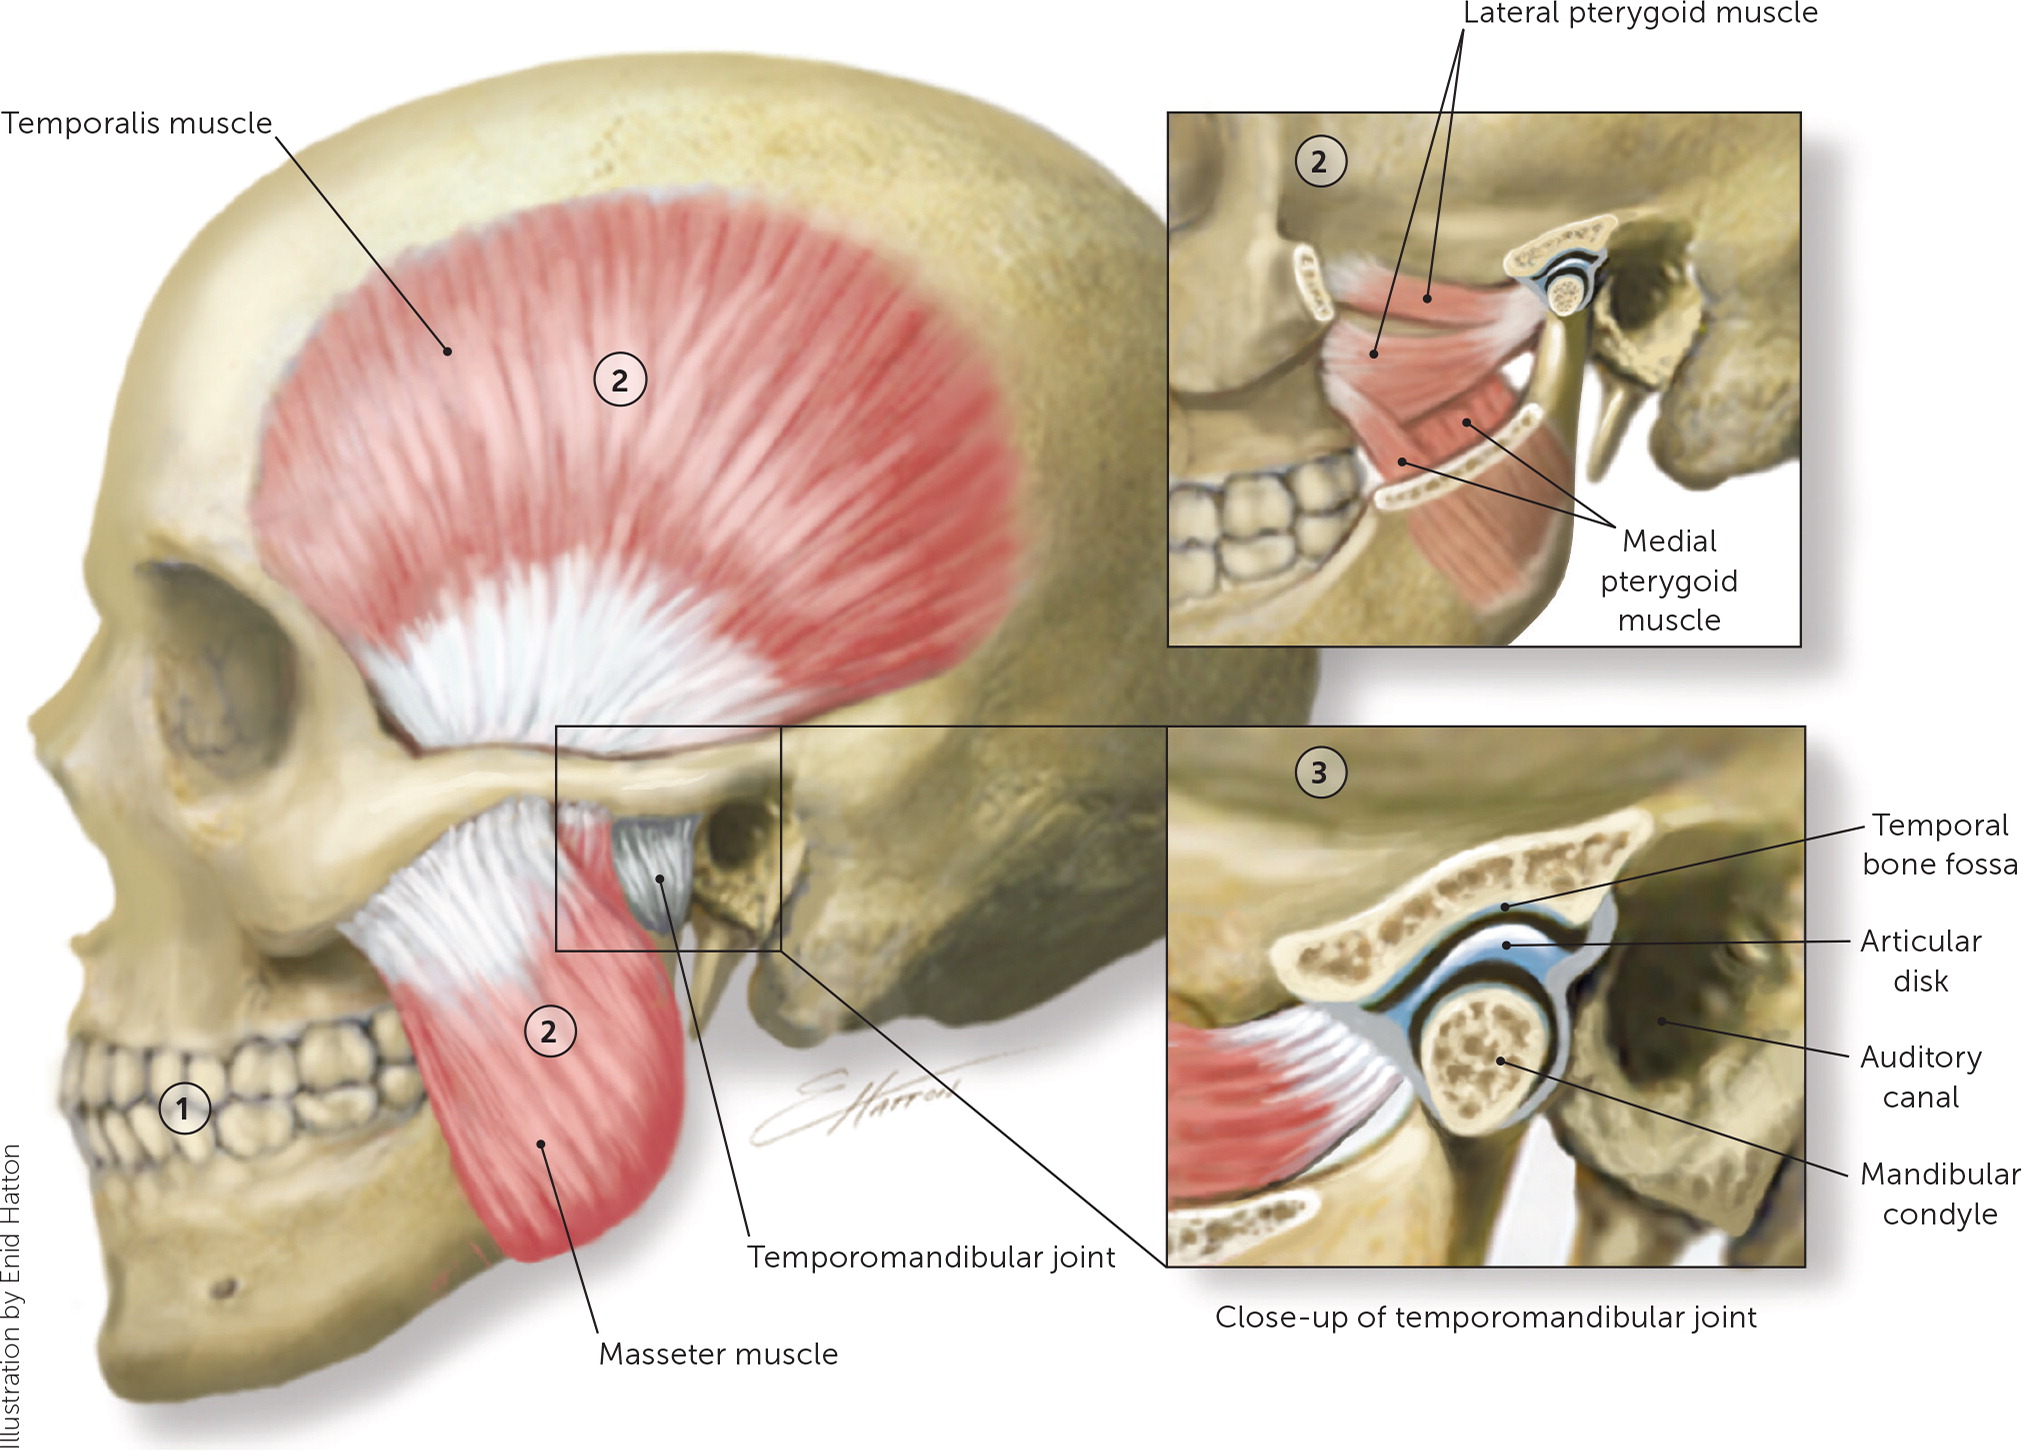 Внчс уха. Мышцы и связки височно-нижнечелюстного сустава. Мышцы височно-нижнечелюстного сустава анатомия.